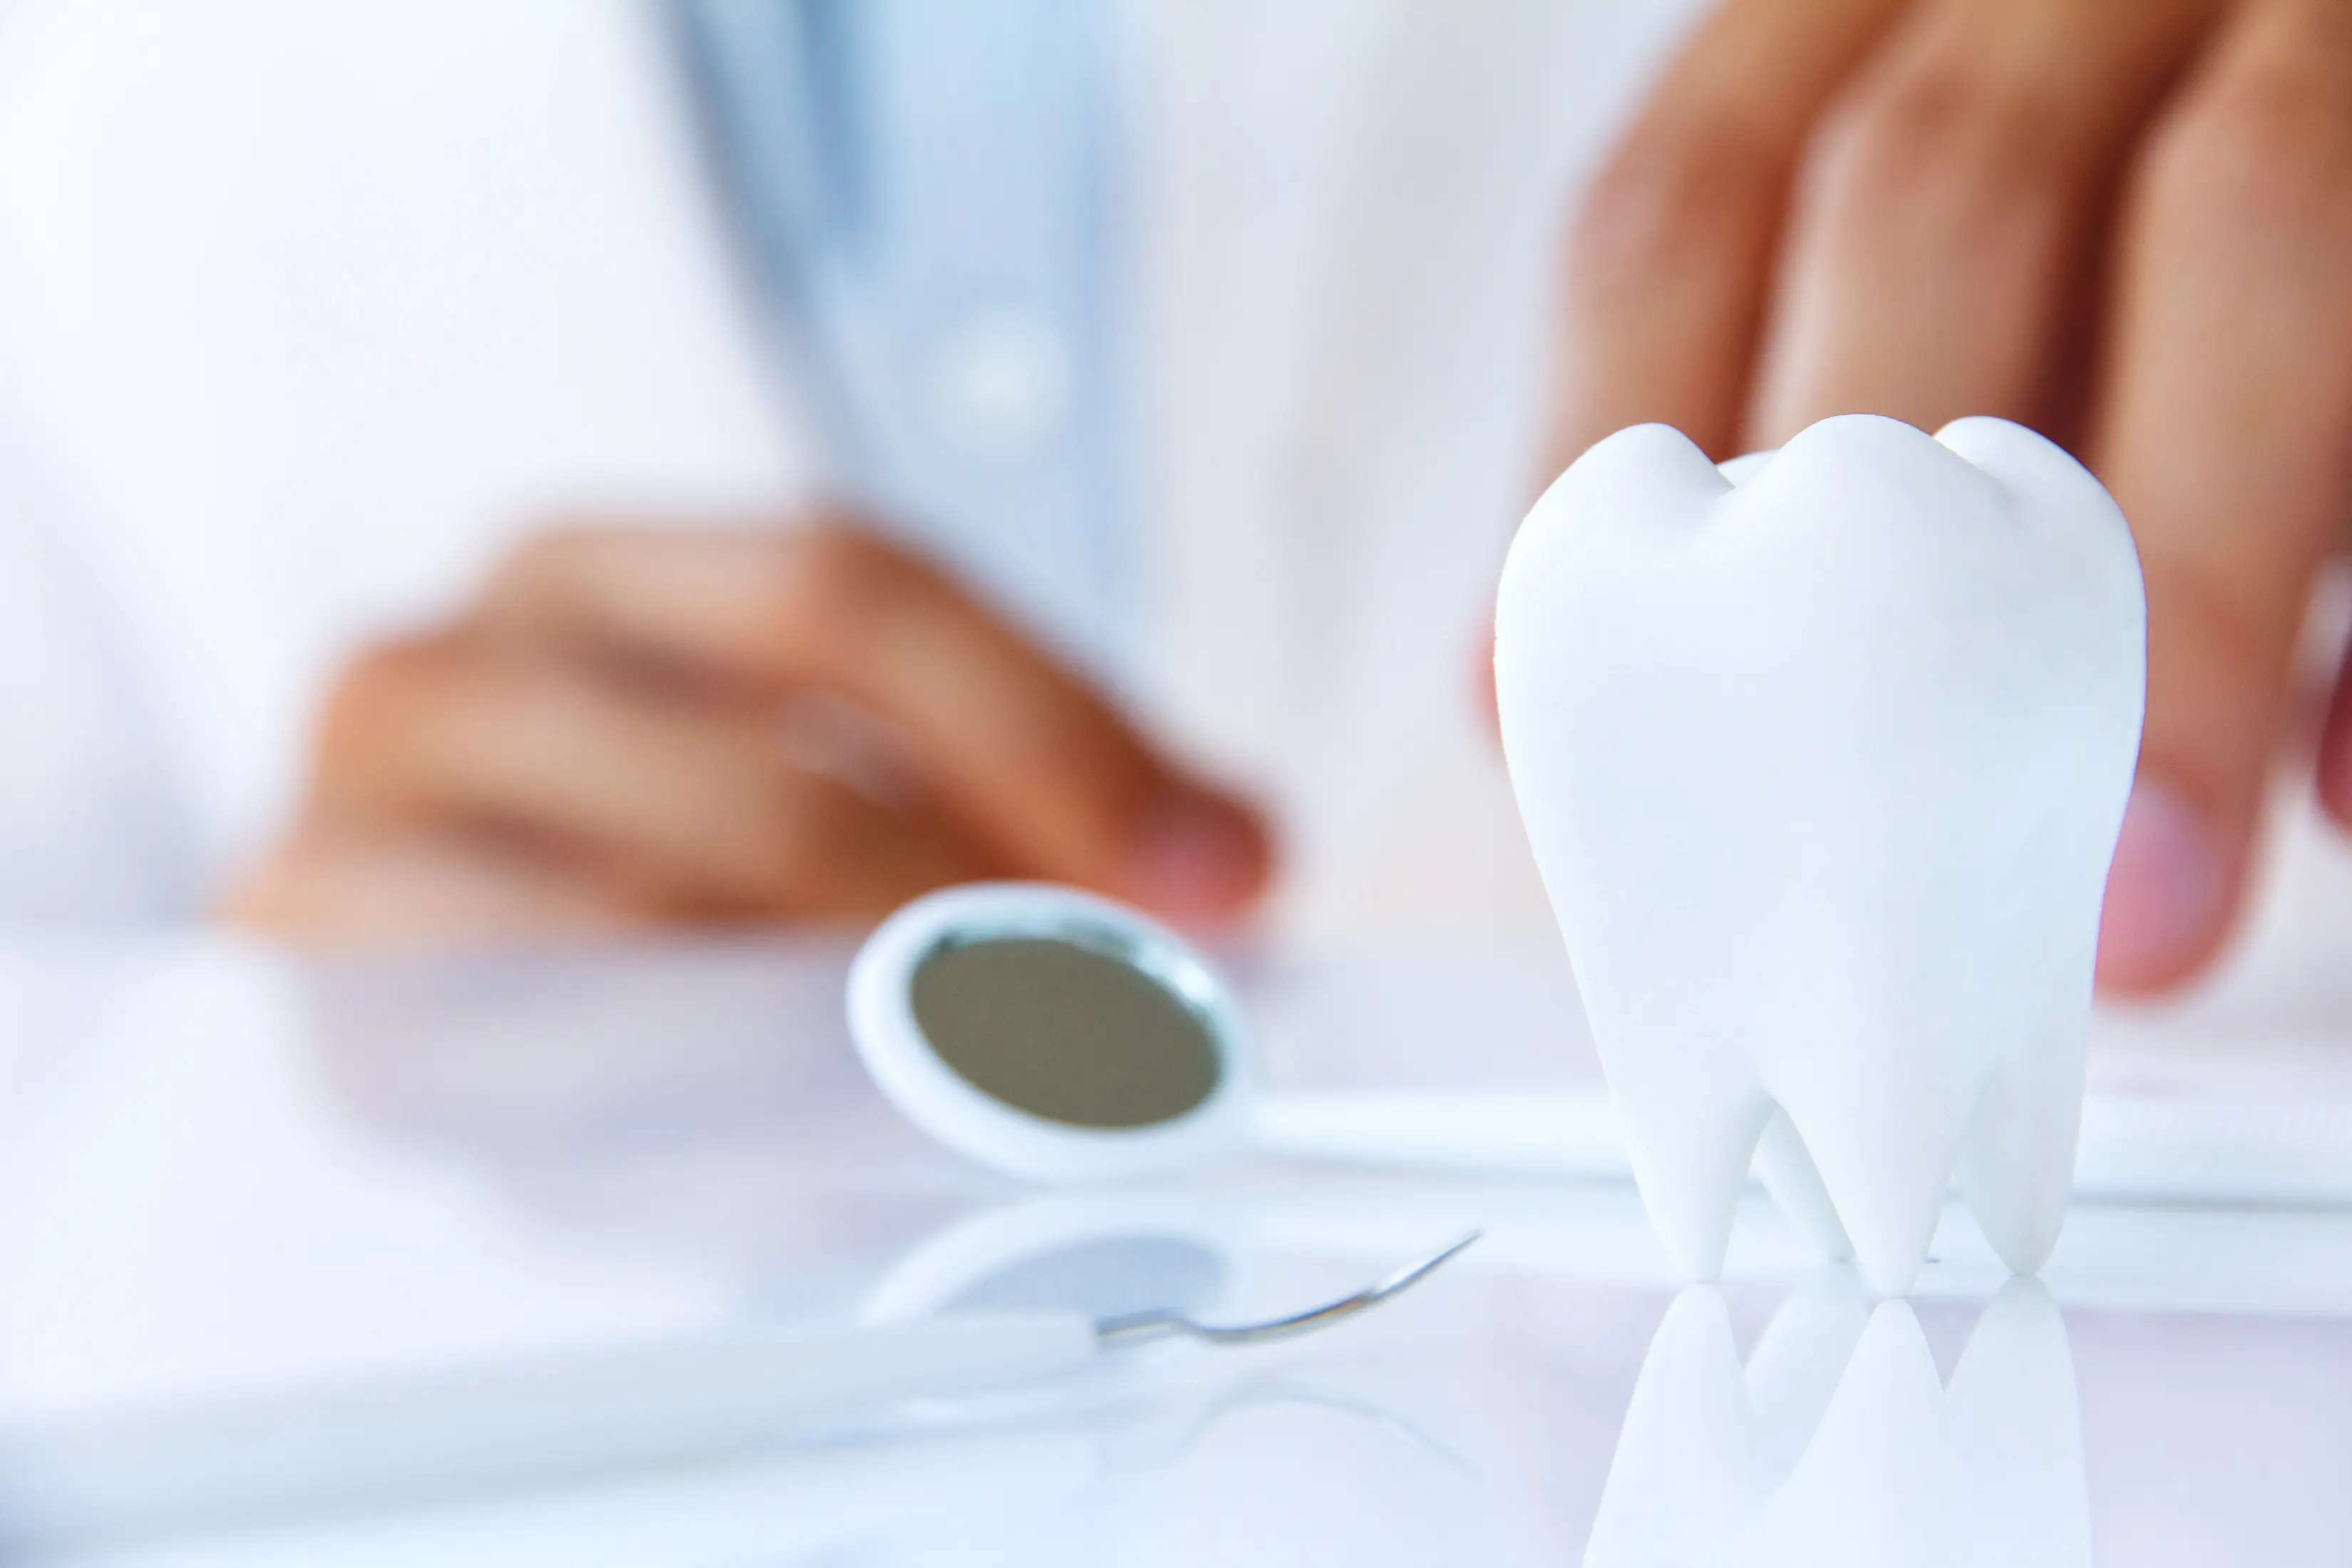 Apakah perlu langsung ke dokter bila gigi kamu berlubang? (Sumber Foto: Steven M Huffstutler DDS)